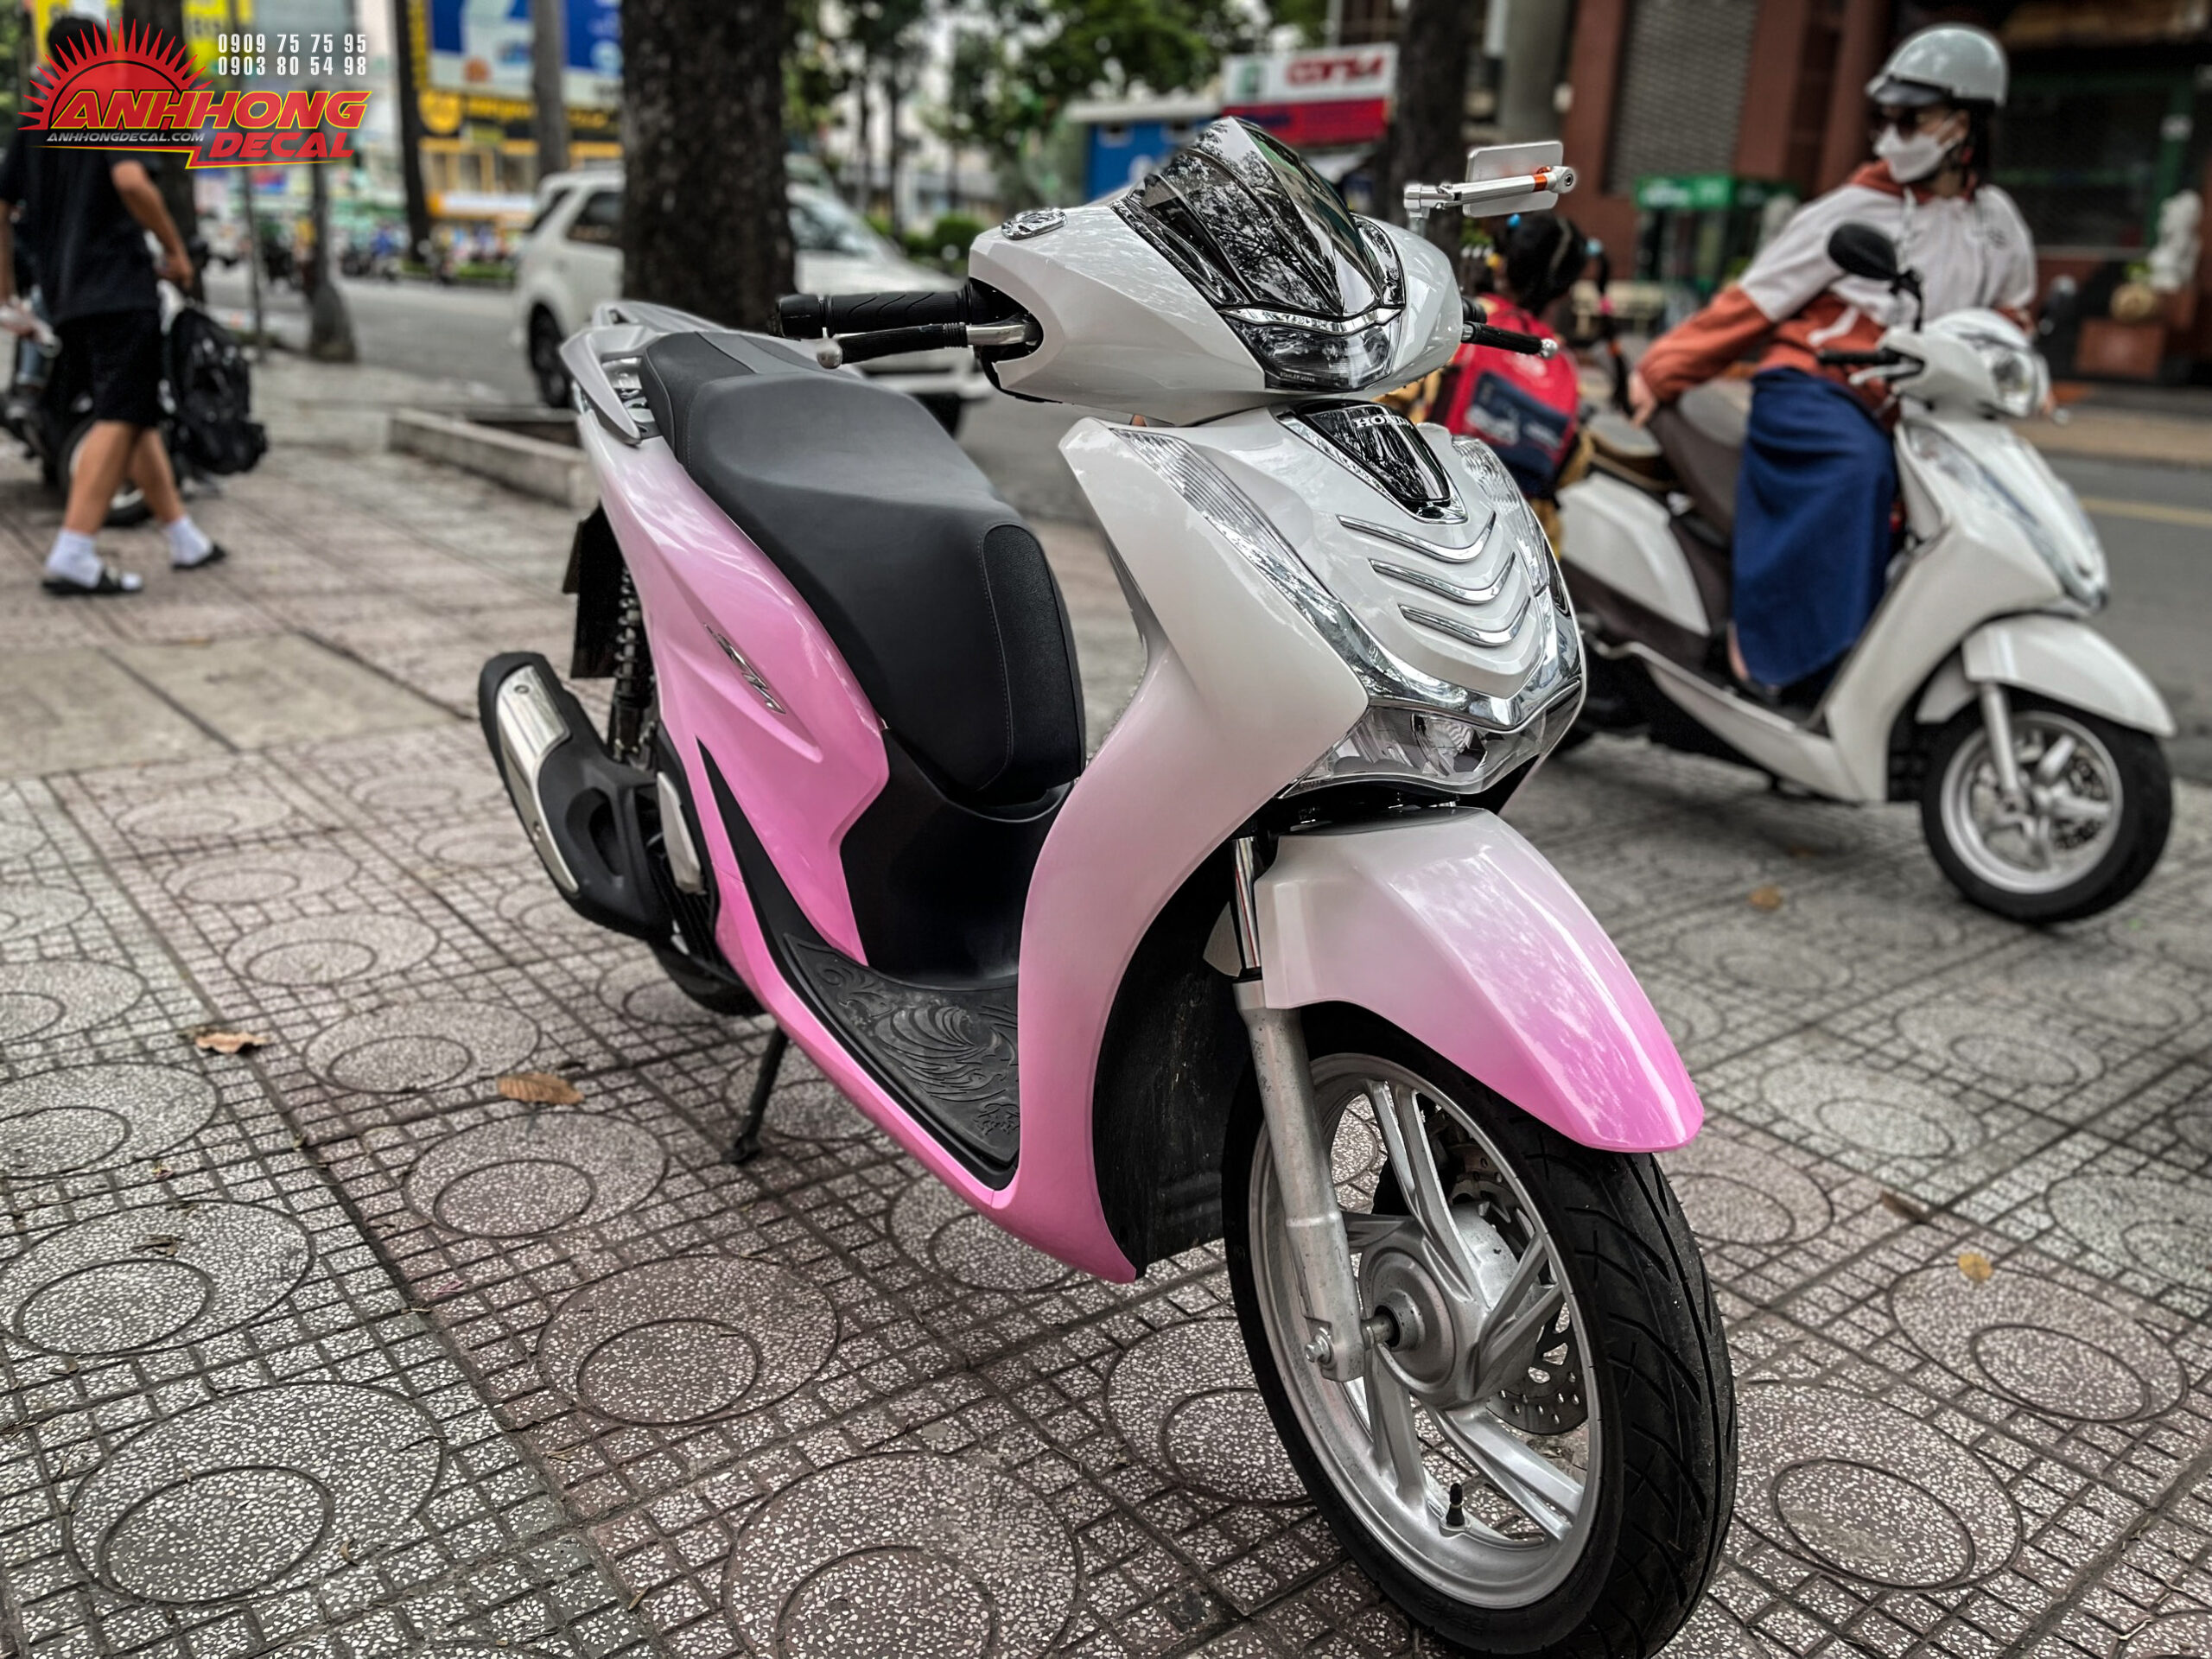 Sơn Sporty SH  Mẫu sơn xe Honda Sh150i màu hồng cực đẹp  Facebook